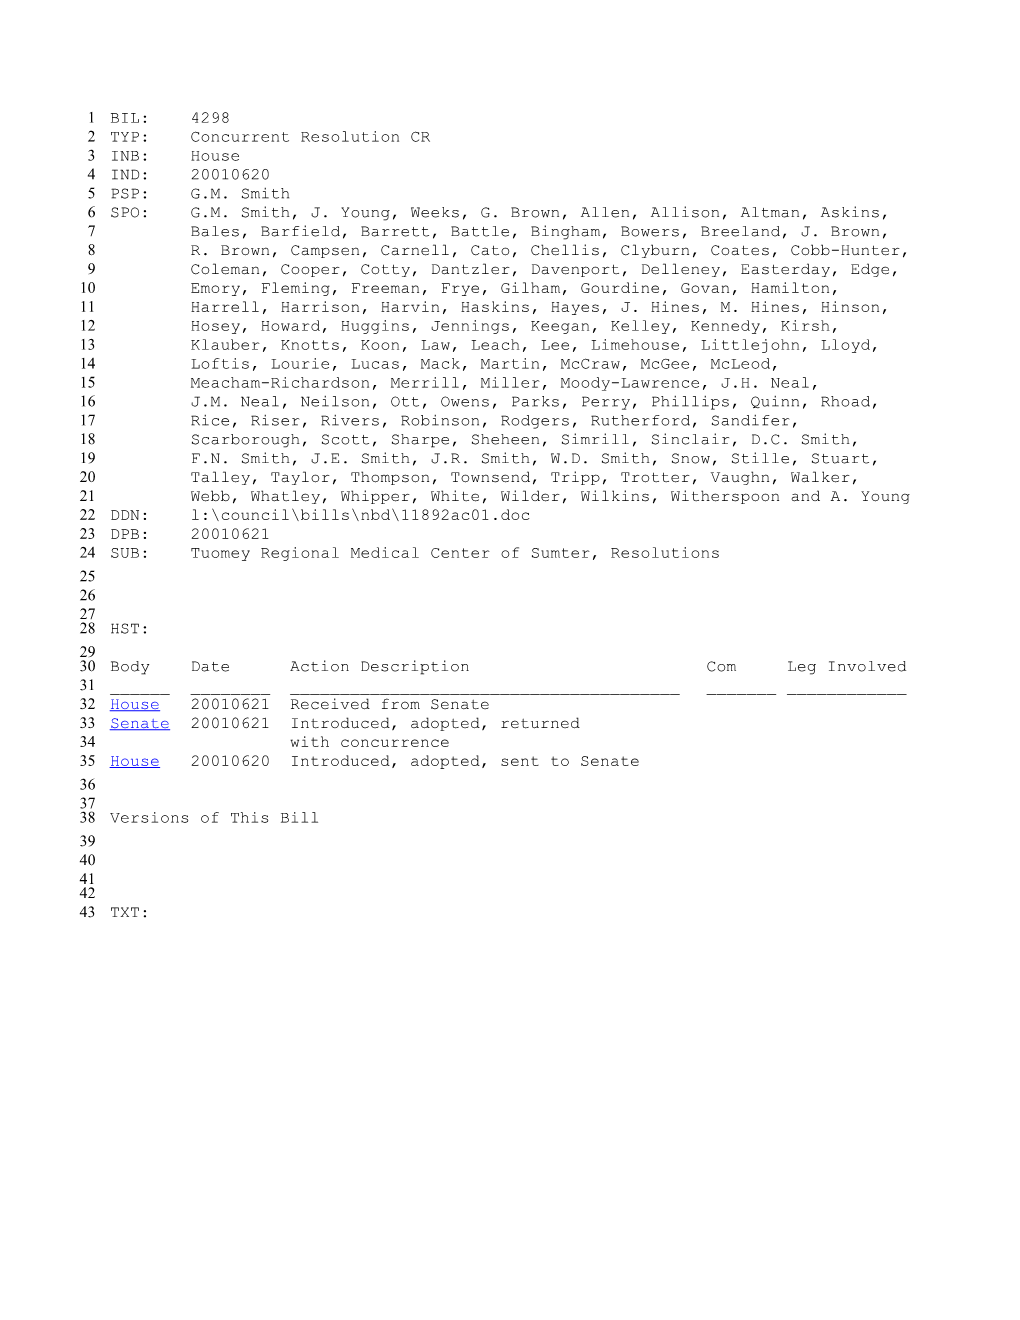 2001-2002 Bill 4298: Tuomey Regional Medical Center of Sumter, Resolutions - South Carolina